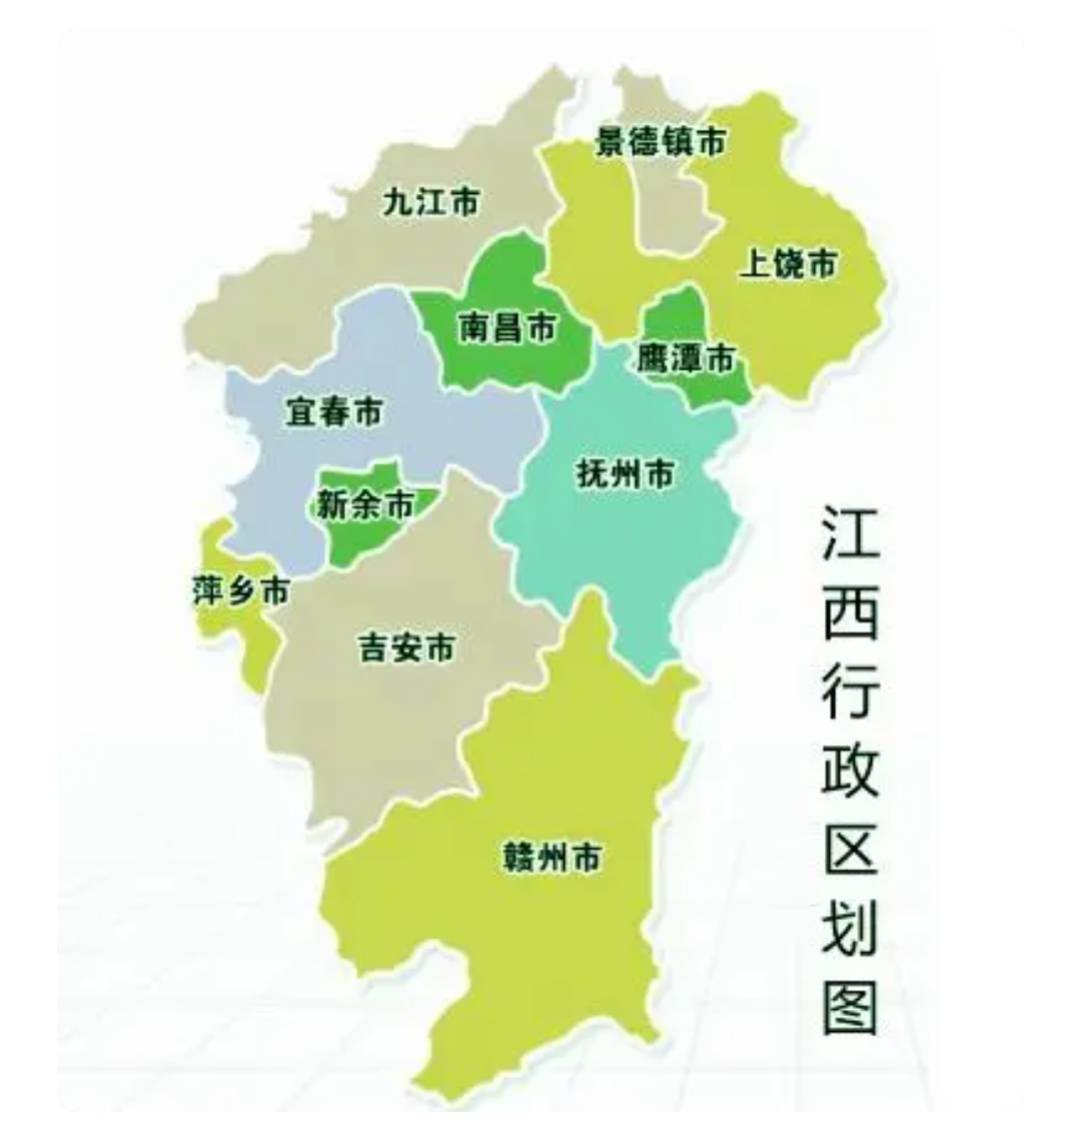 除了赣州市之外,其实例如吉安市,抚州市与萍乡市,新余市以及宜春市